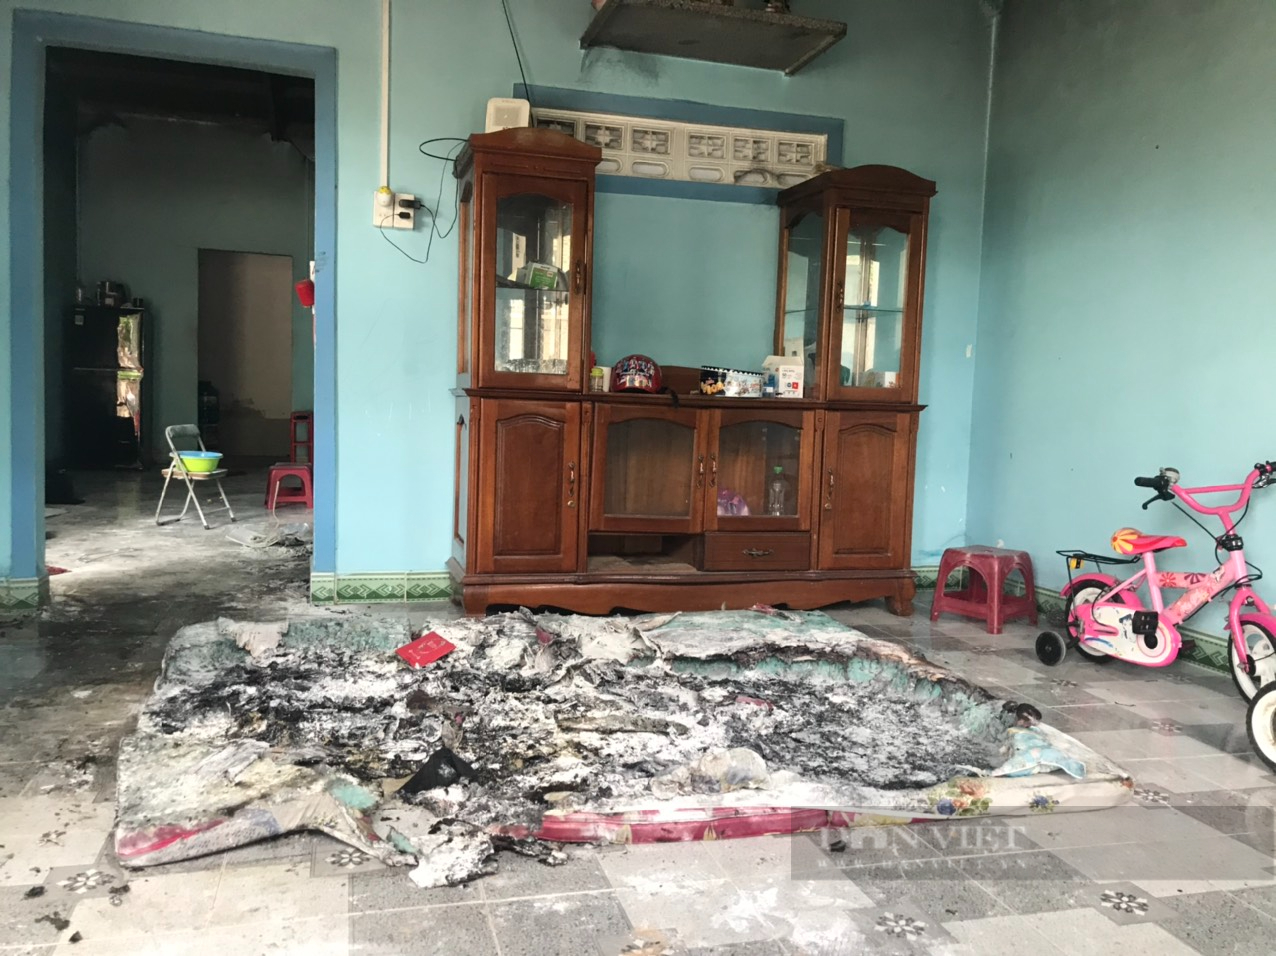  Hiện trường vụ cháy khiến cả hai vợ chồng trẻ tử vong ở Khánh Hòa - Ảnh 3.